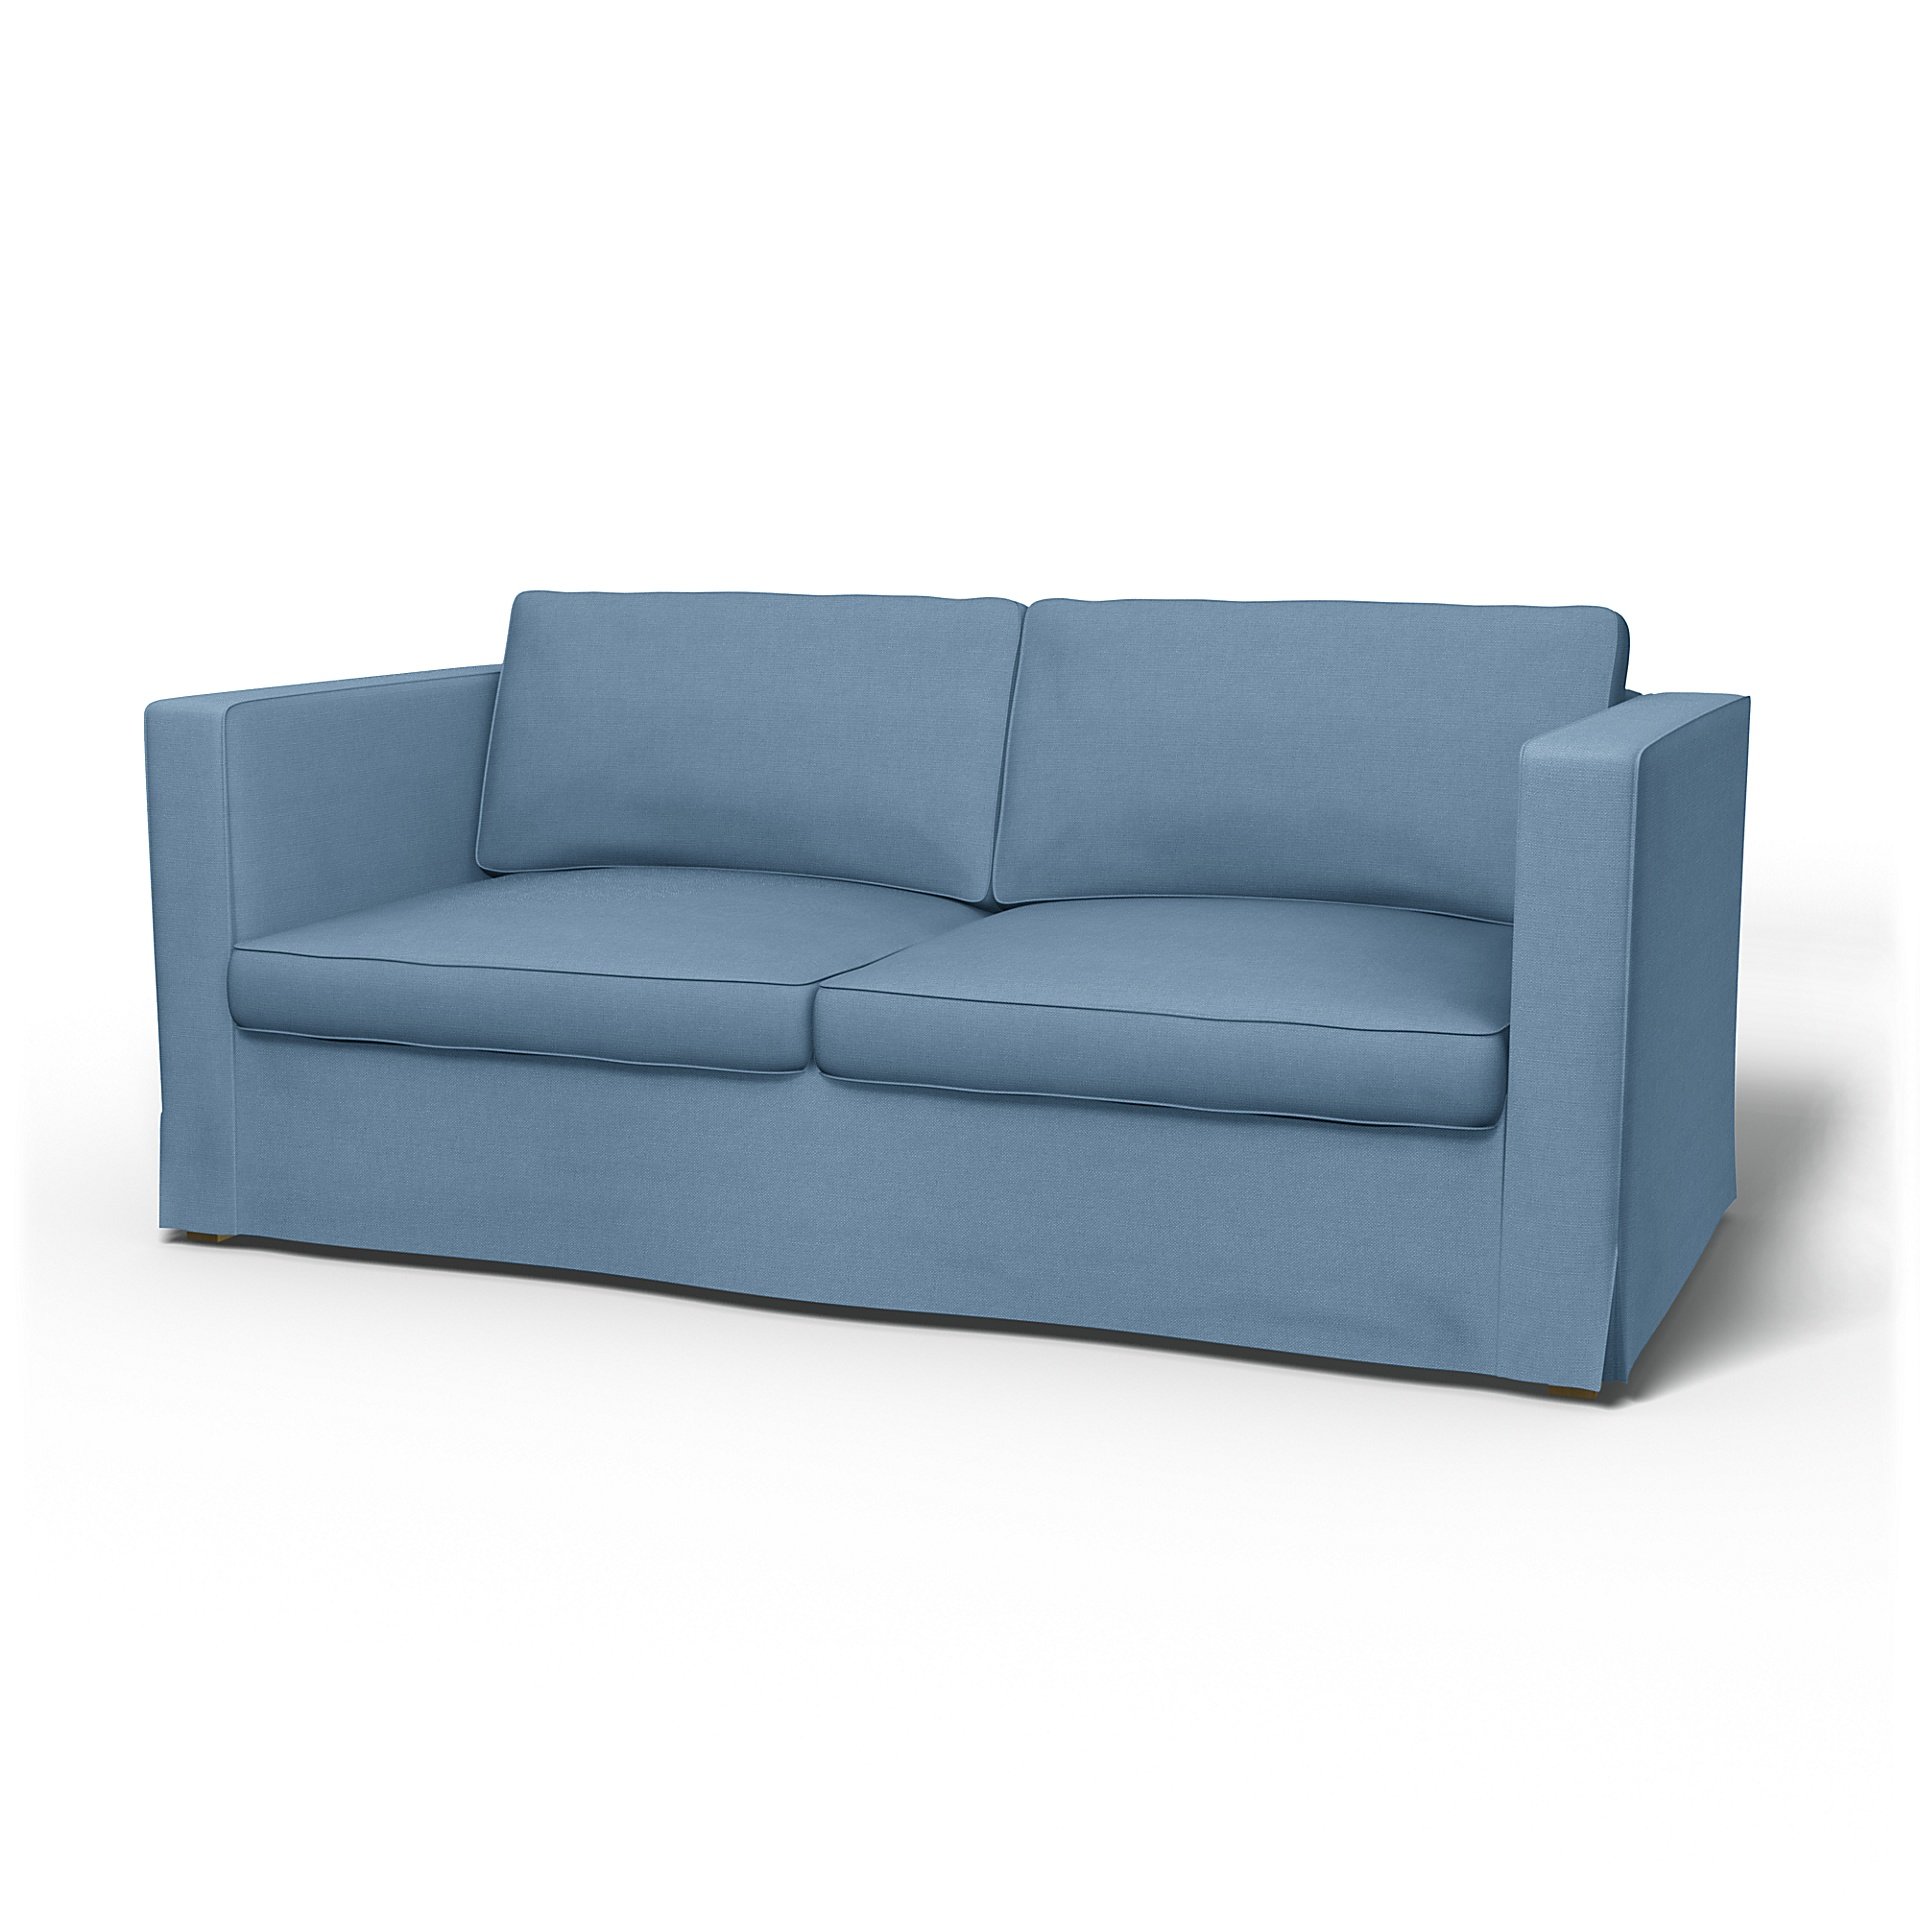 IKEA - Karlanda Sofa Bed Cover, Vintage Blue, Linen - Bemz